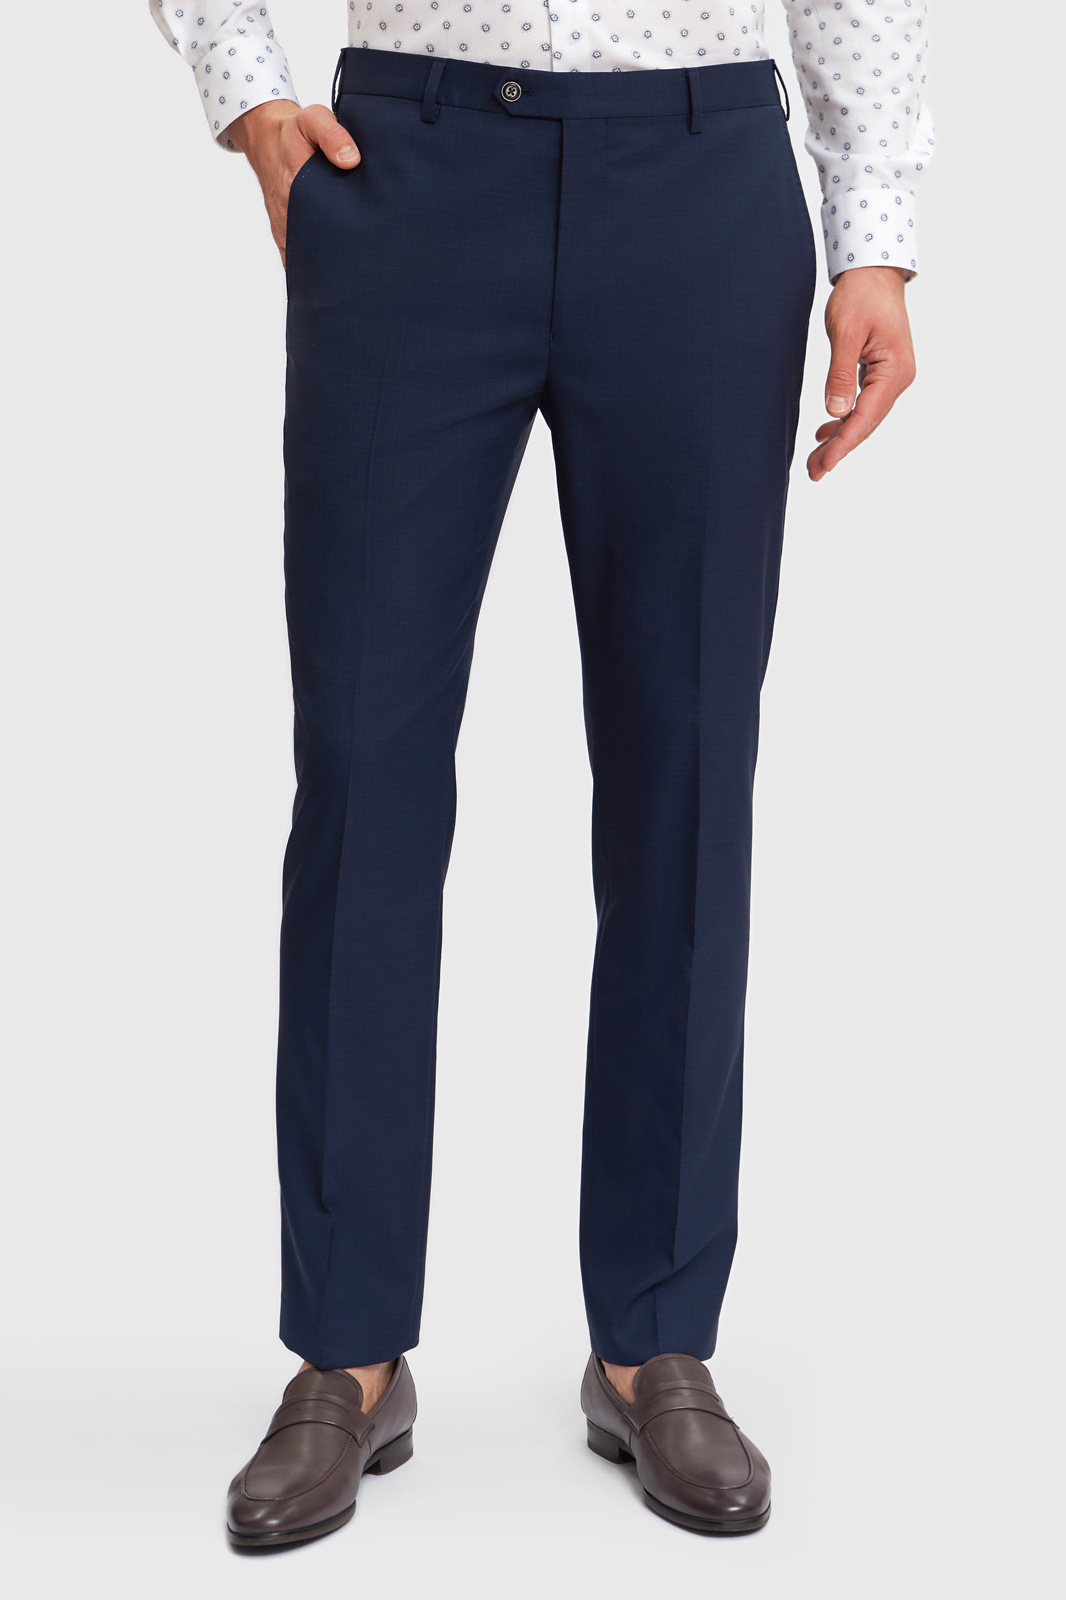 kanzler брюки прямые темно-синие из шерсти и шелка